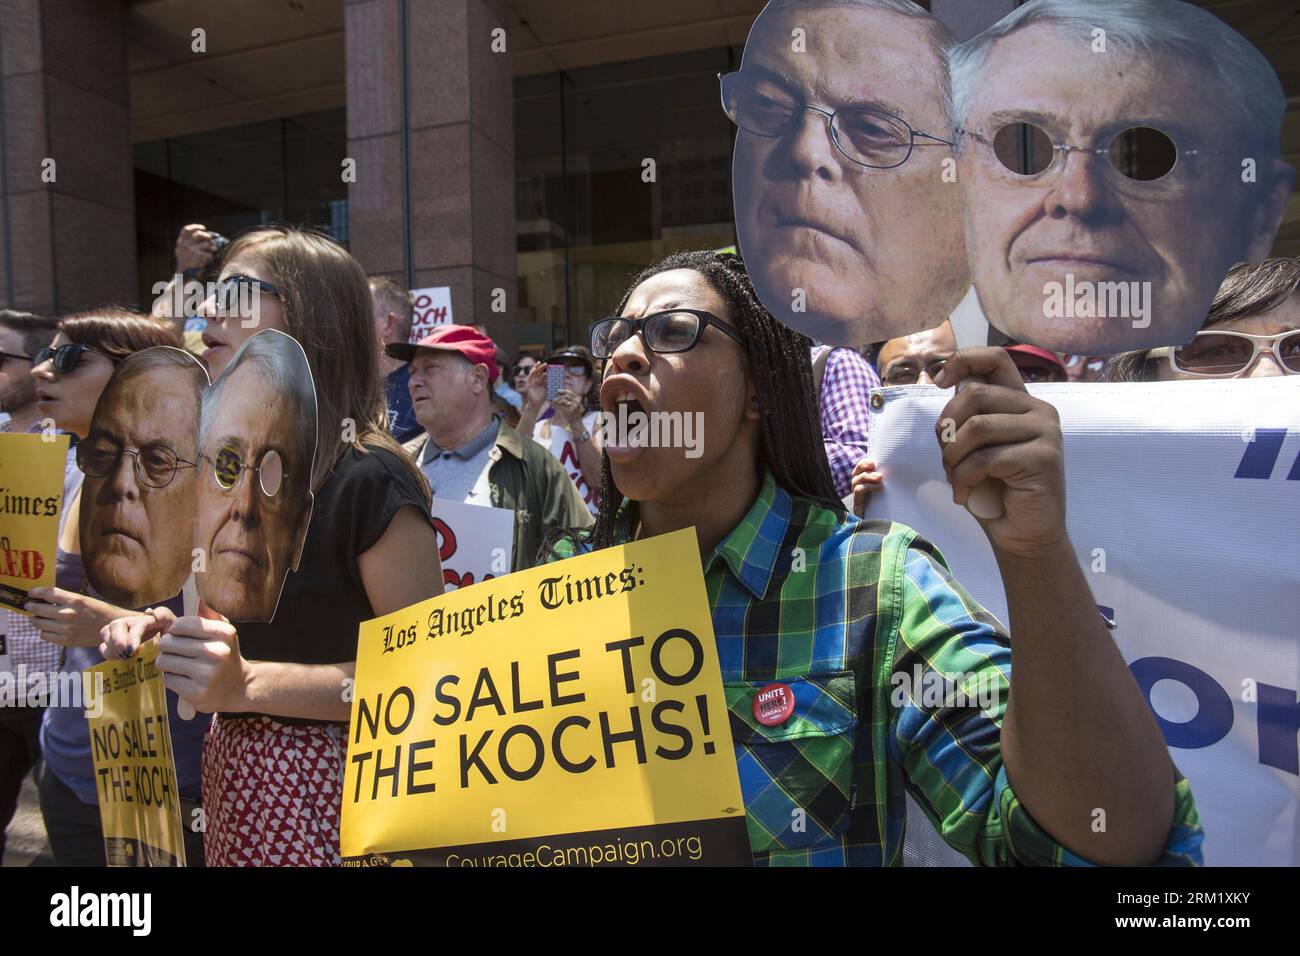 Bildnummer: 59646006 Datum: 14.05.2013 Copyright: imago/Xinhua (130515) -- LOS ANGELES, 14. Mai 2013 (Xinhua) -- Demonstranten schreien Parolen während einer Kundgebung gegen Koch-Brüder möglicher Kauf der Los Angeles Times in Downtown Los Angeles, USA, 14. Mai 2013. Die Öl- und Gas-Milliardäre Charles und David Koch wollen mehrere Zeitungen kaufen, darunter die Los Angeles Times. (Xinhua/Zhao Hanrong) (djj) U.S.-LOS ANGELES TIMES-KOCH BROTHERS-RALLY PUBLICATIONxNOTxINxCHN Wirtschaft Protest Kauf Verkauf Zeitung USA Medien Presse Premiere x0x xsk 2013 quer 59646006 Datum 14 Stockfoto